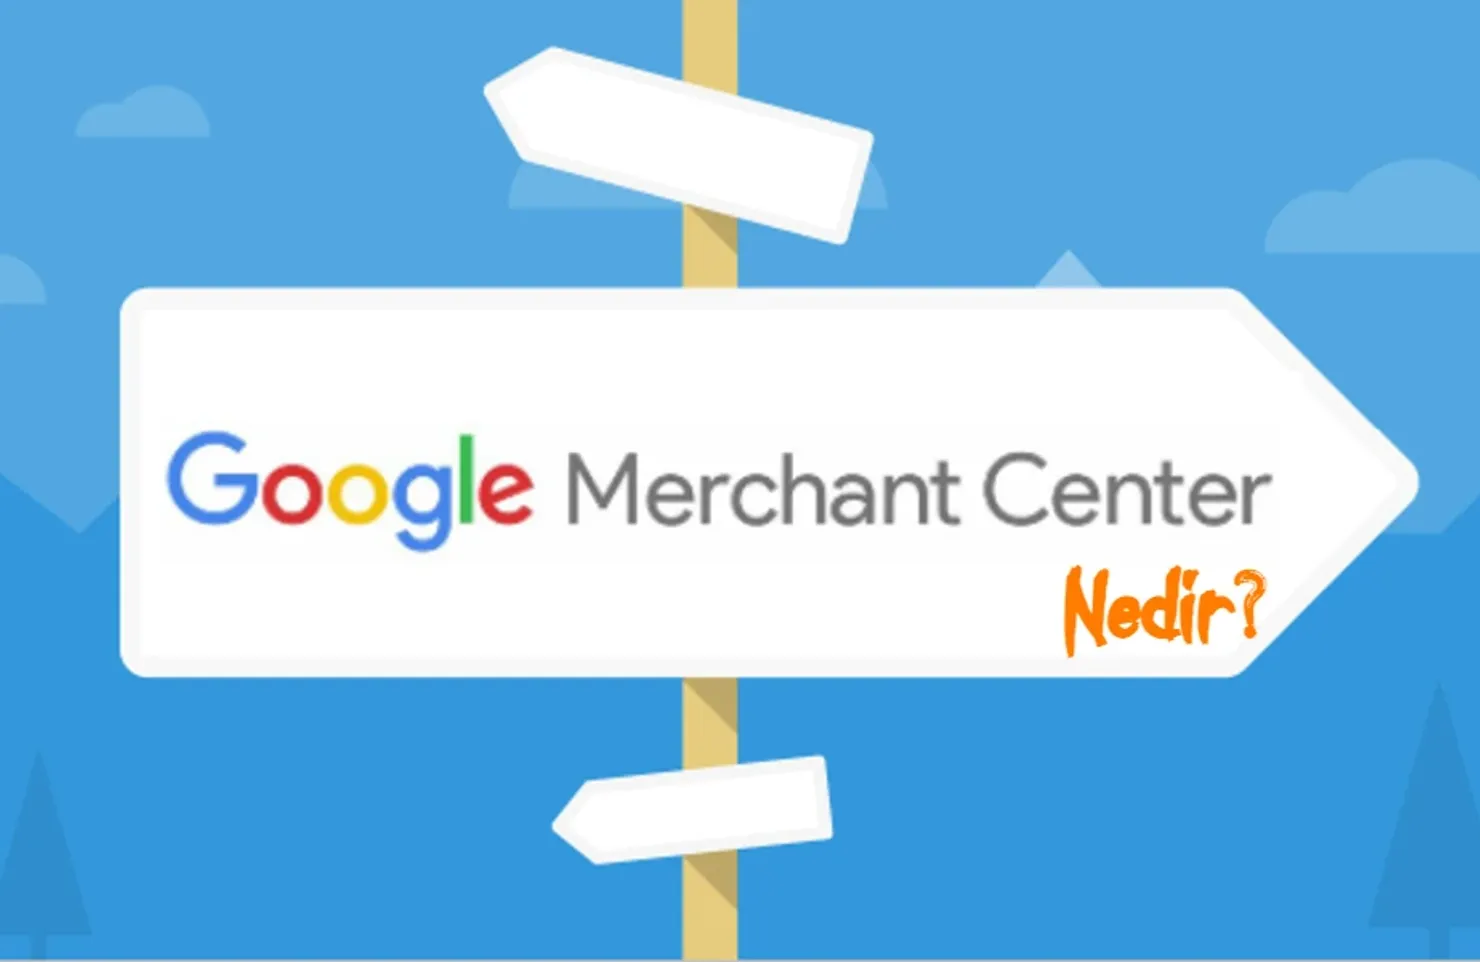 Google Merchant Center Nedir